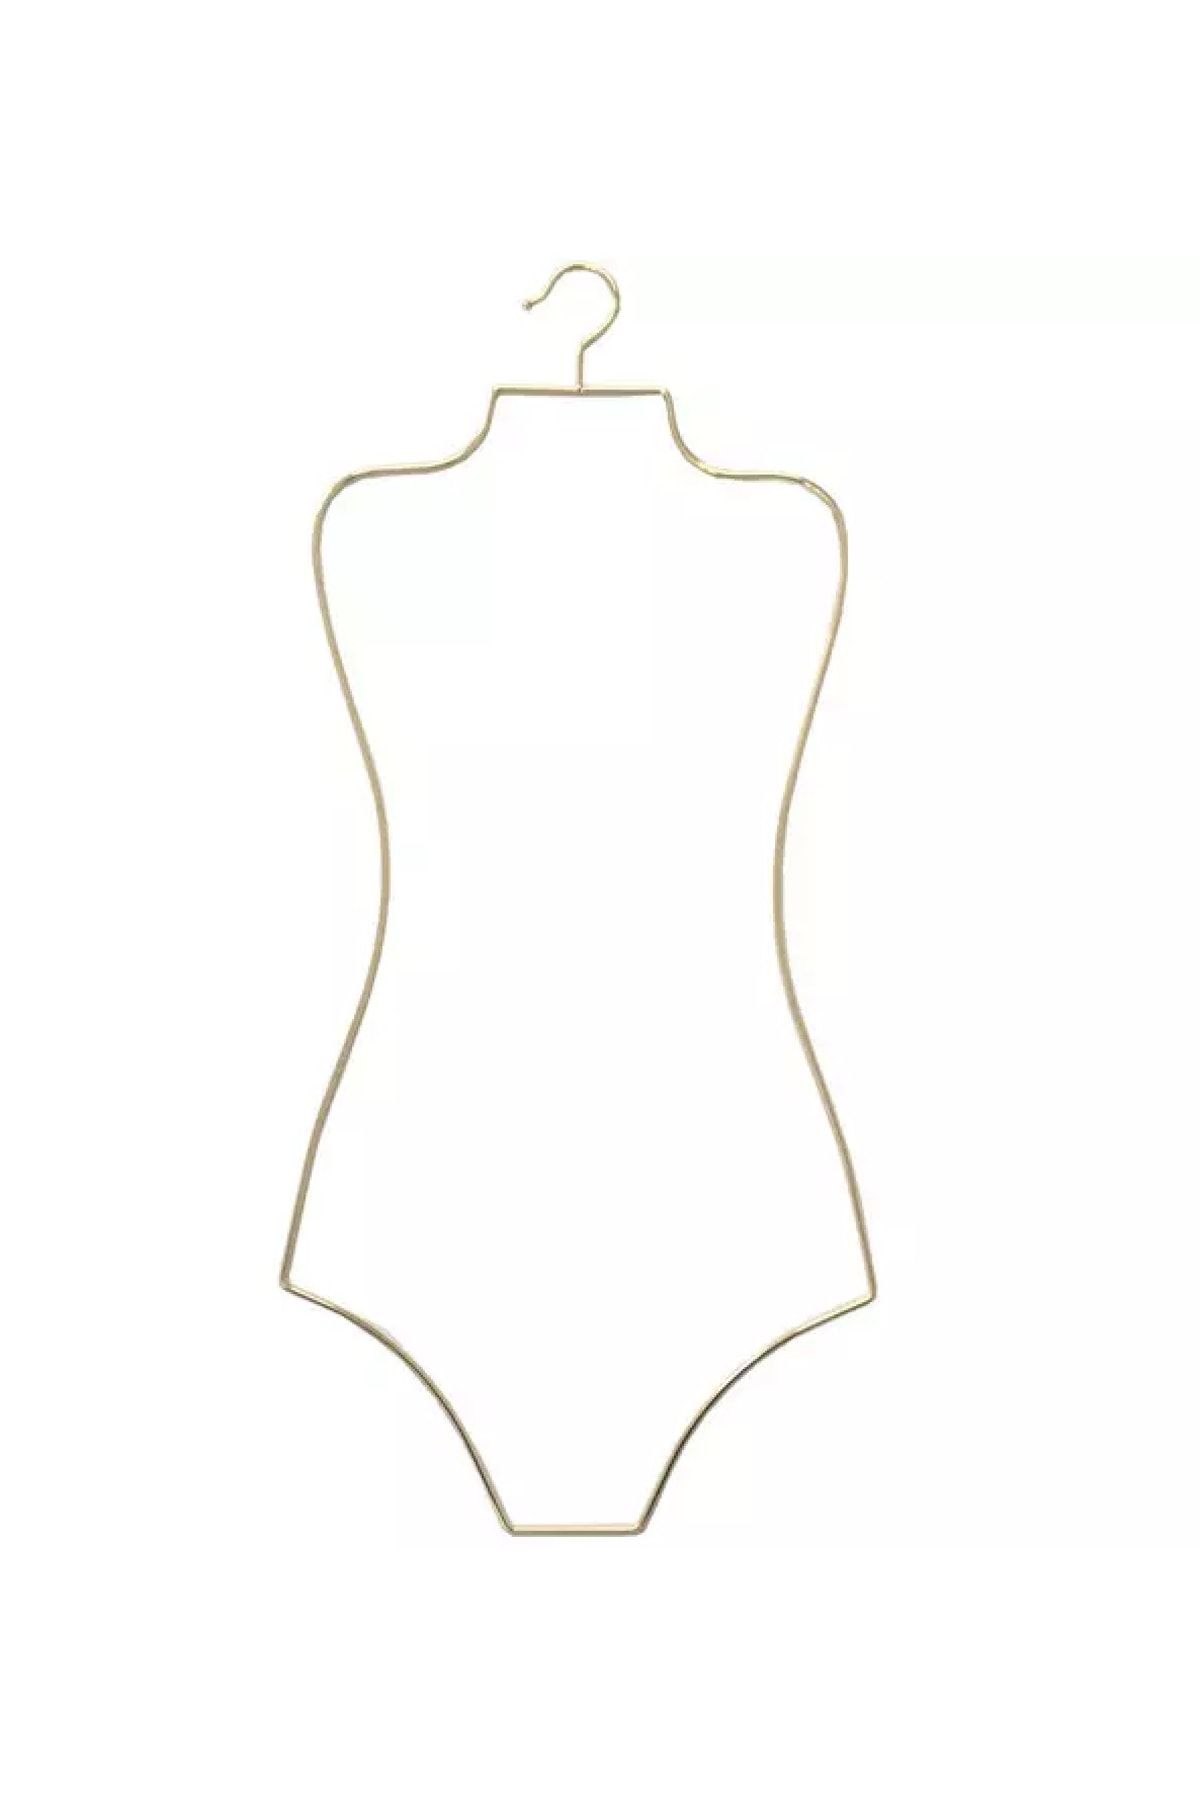 Orientalis Metal Vücut Formlu Bikini Mayo Askısı Gold Altın Renk